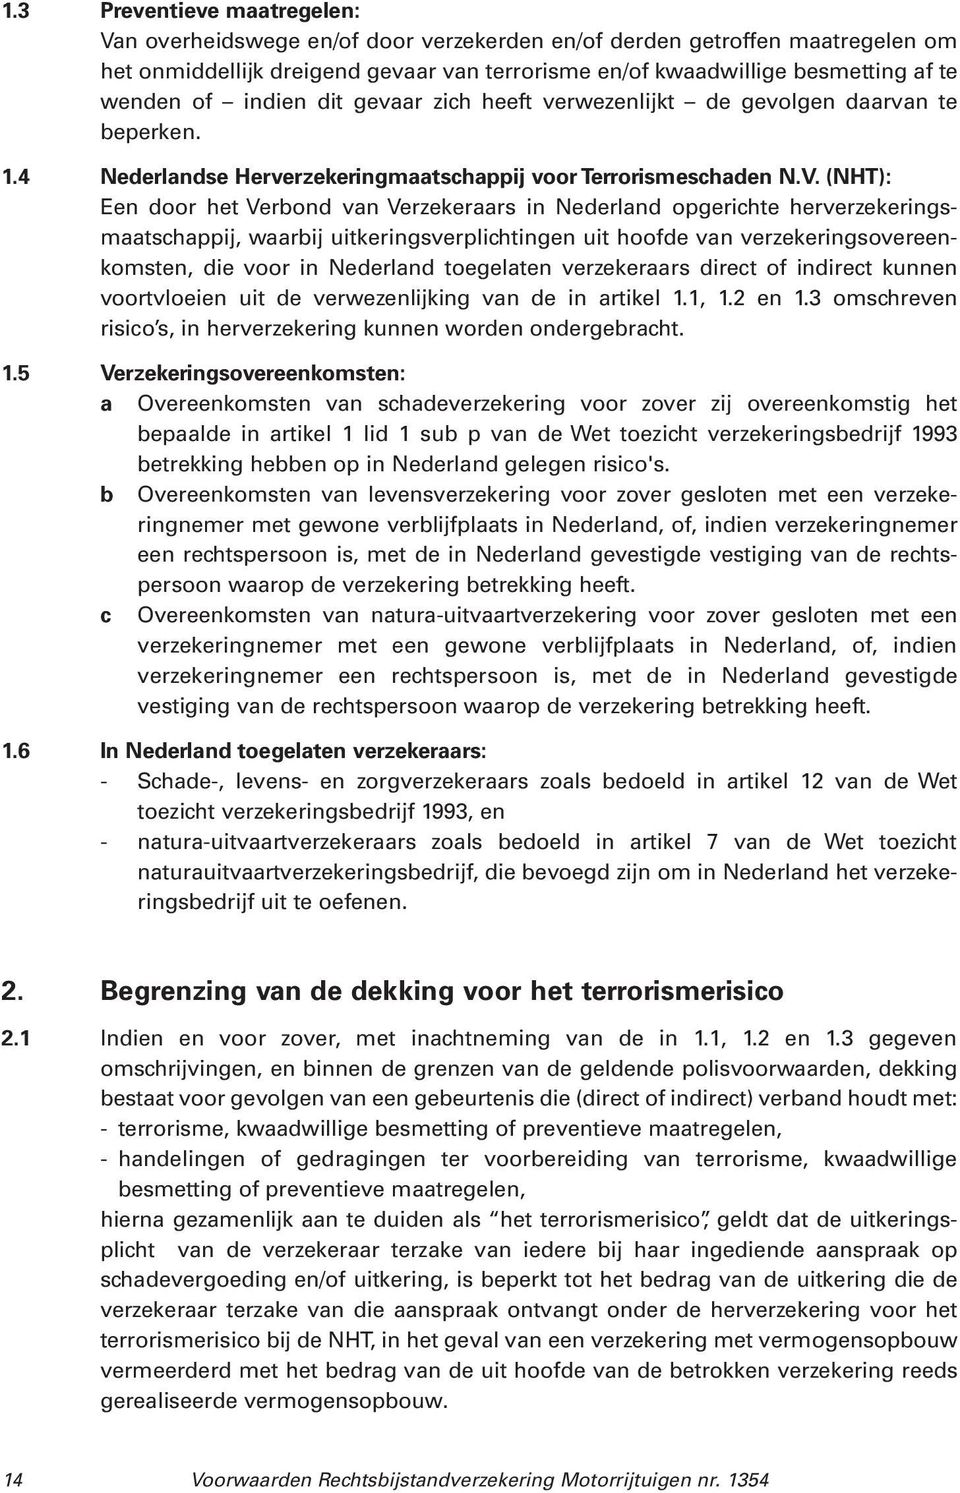 (NHT): Een door het Verbond van Verzekeraars in Nederland opgerichte herverzekeringsmaatschappij, waarbij uitkeringsverplichtingen uit hoofde van verzekeringsovereenkomsten, die voor in Nederland